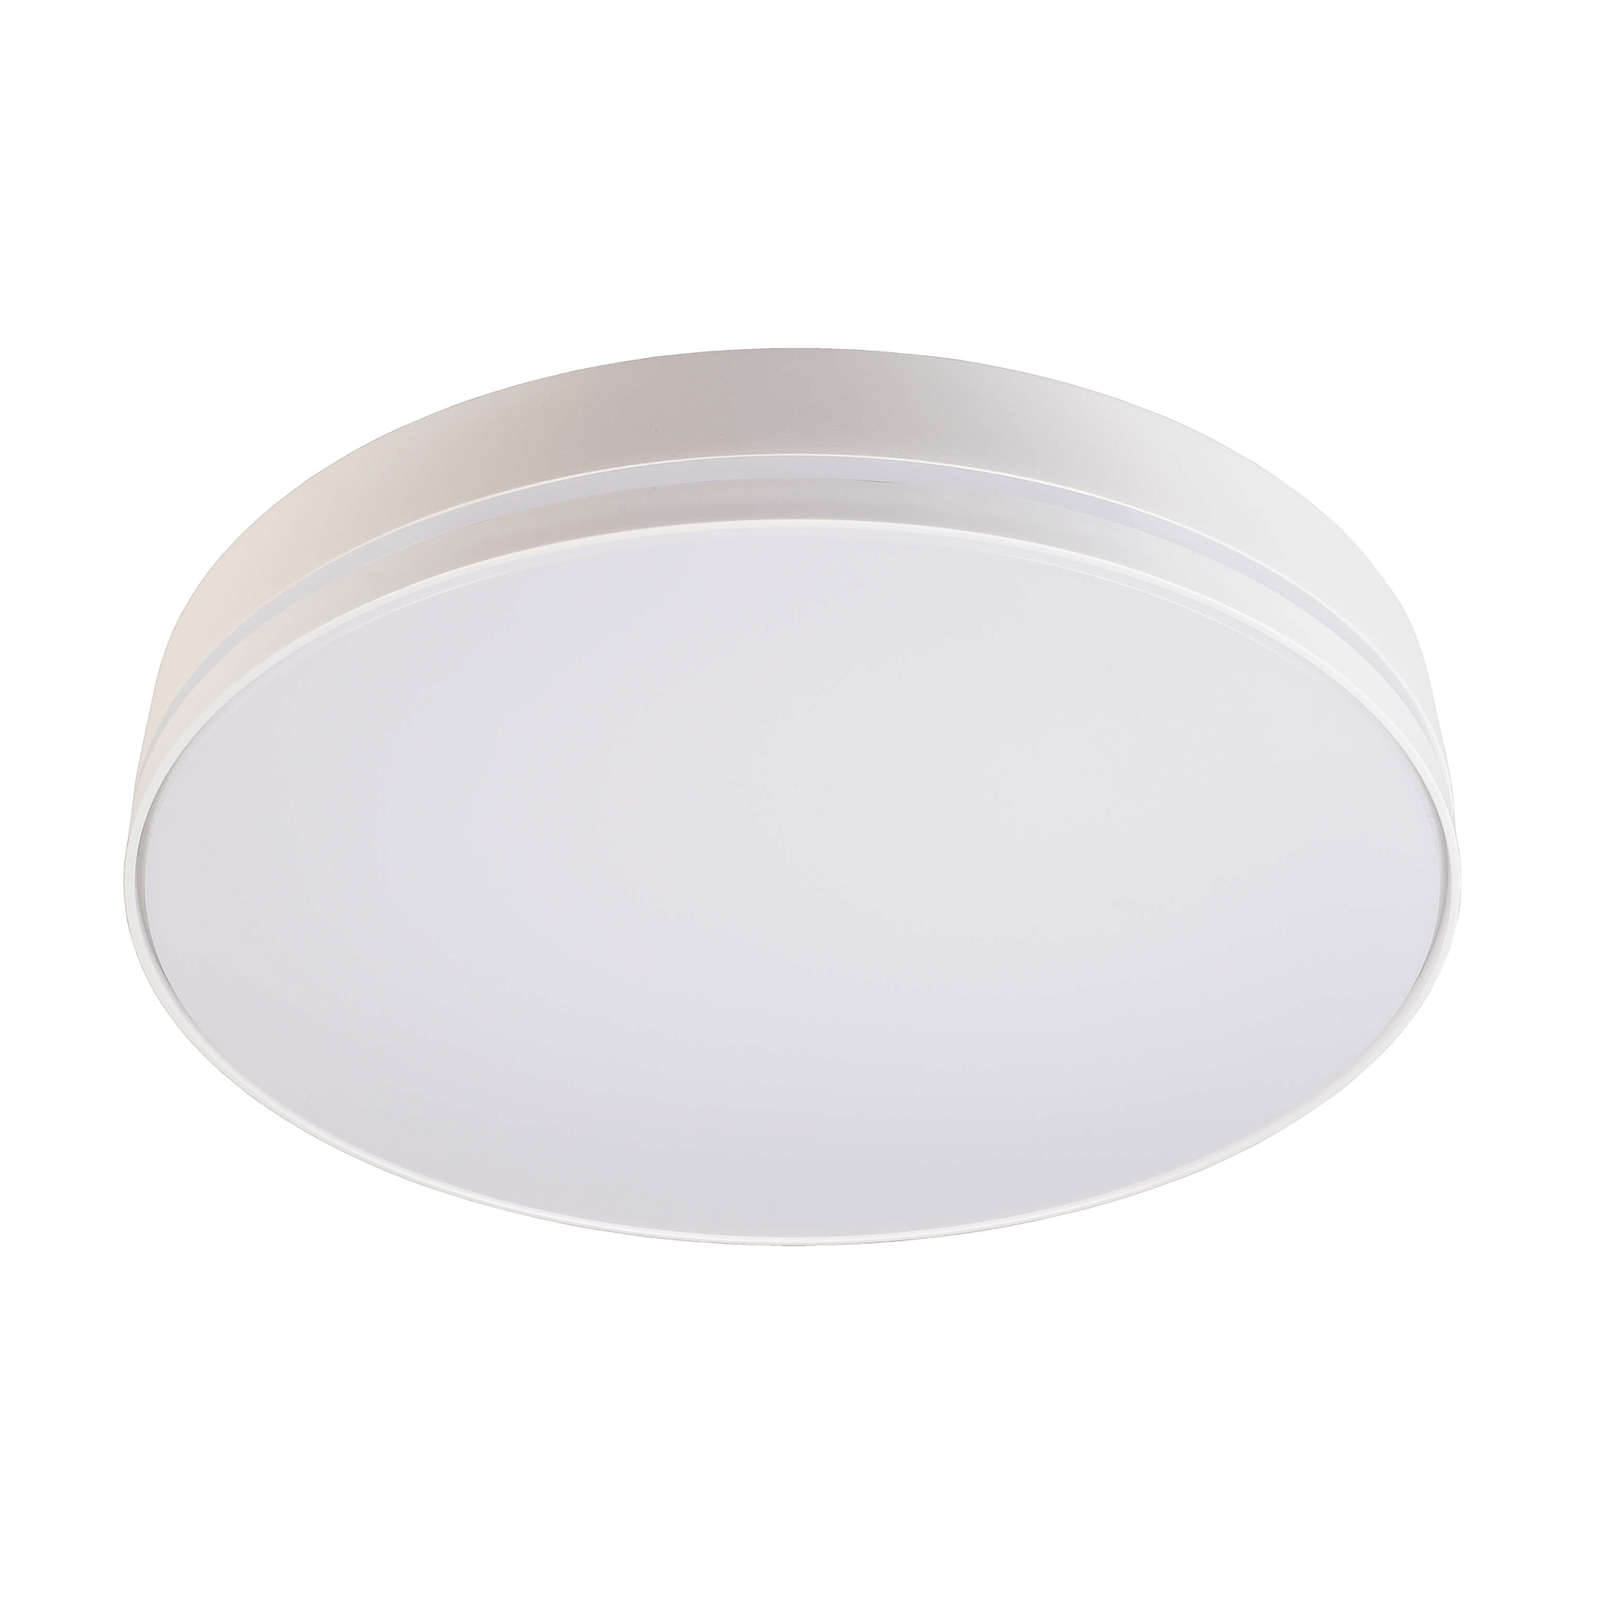 Subra LED sensor ceiling light IP54, 4,000 K